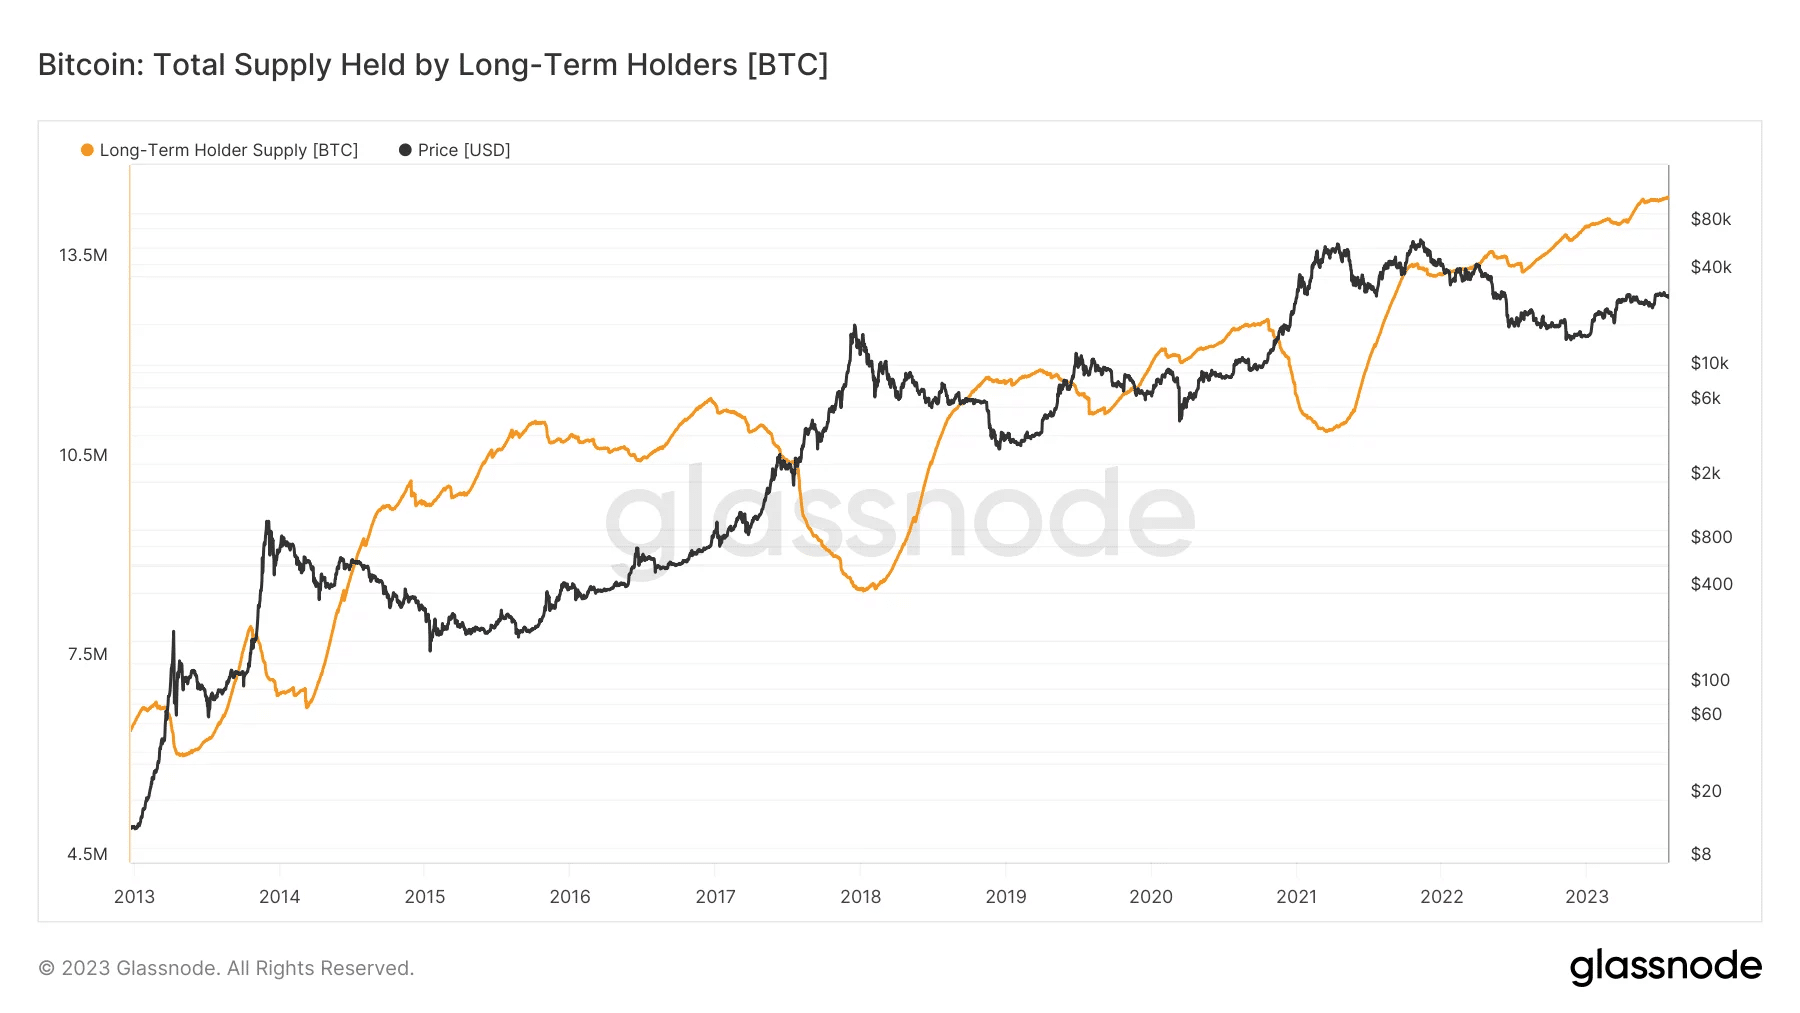 Bitcoinprijs sinds 2013, vergezeld van het aantal BTC dat langer dan 6 maanden in bezit is